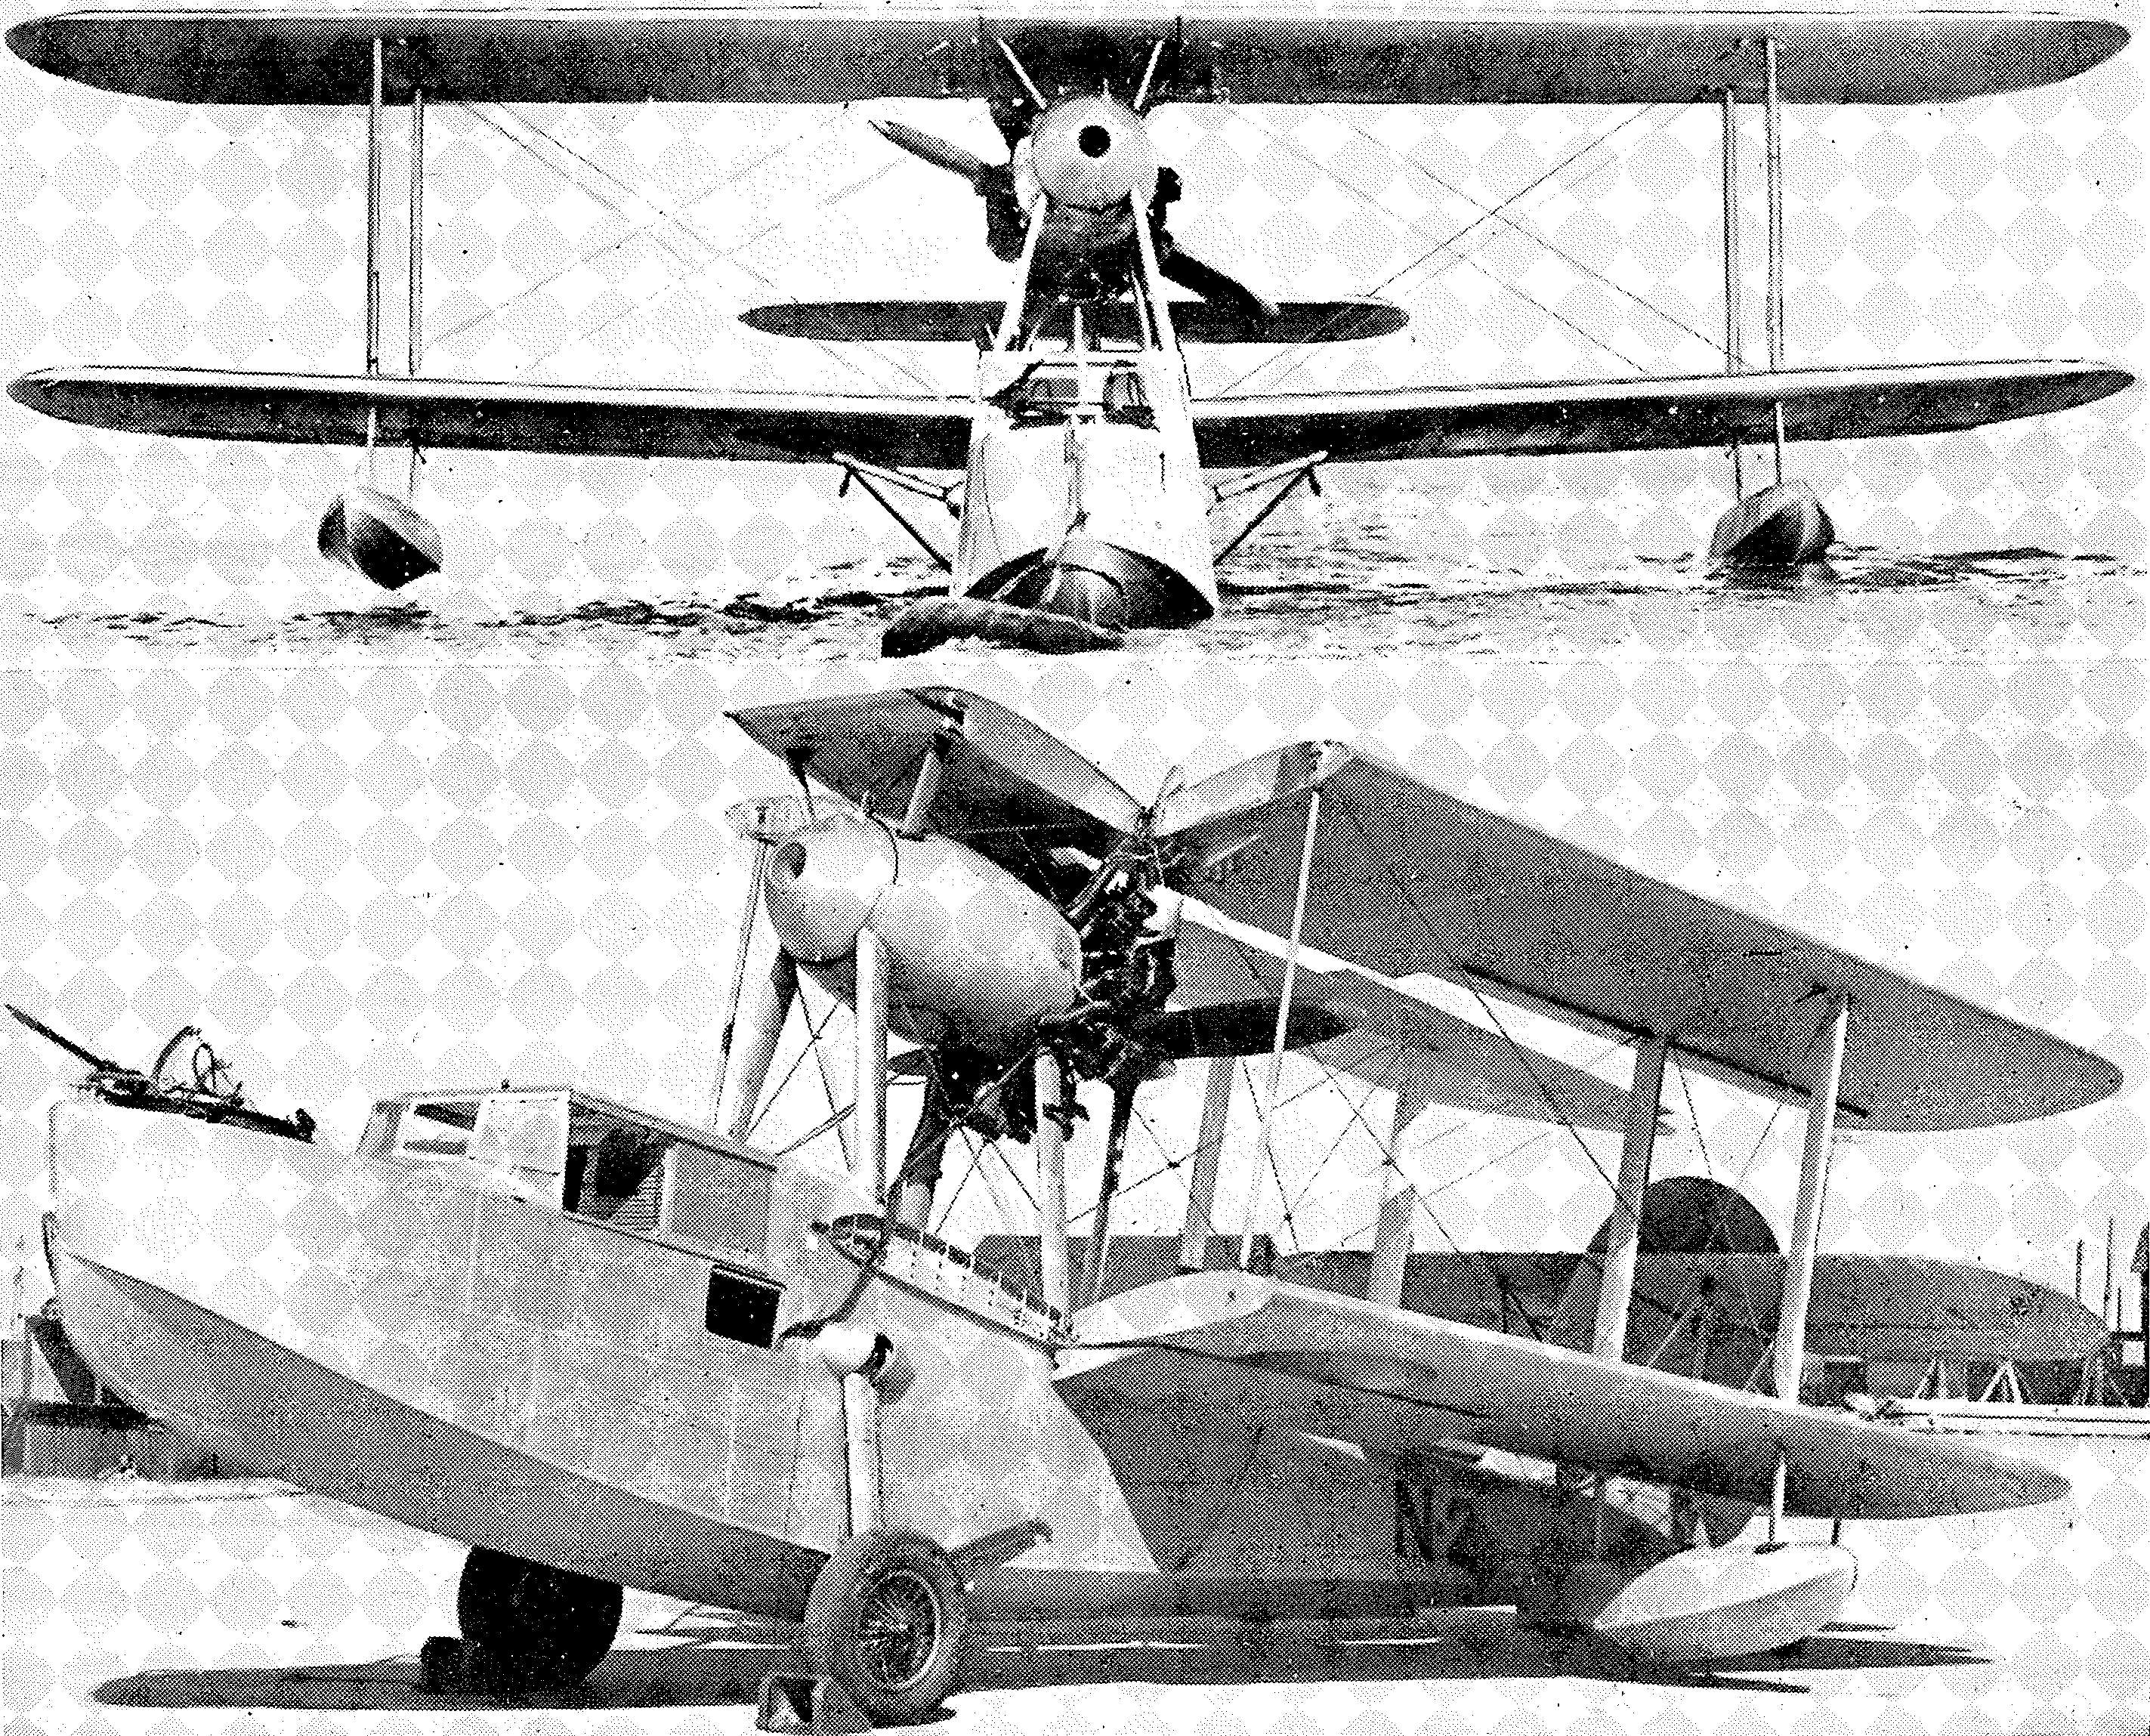 Luftfahrt und Luftverkehr sowie Luftwaffe im Dritten Reich 1934